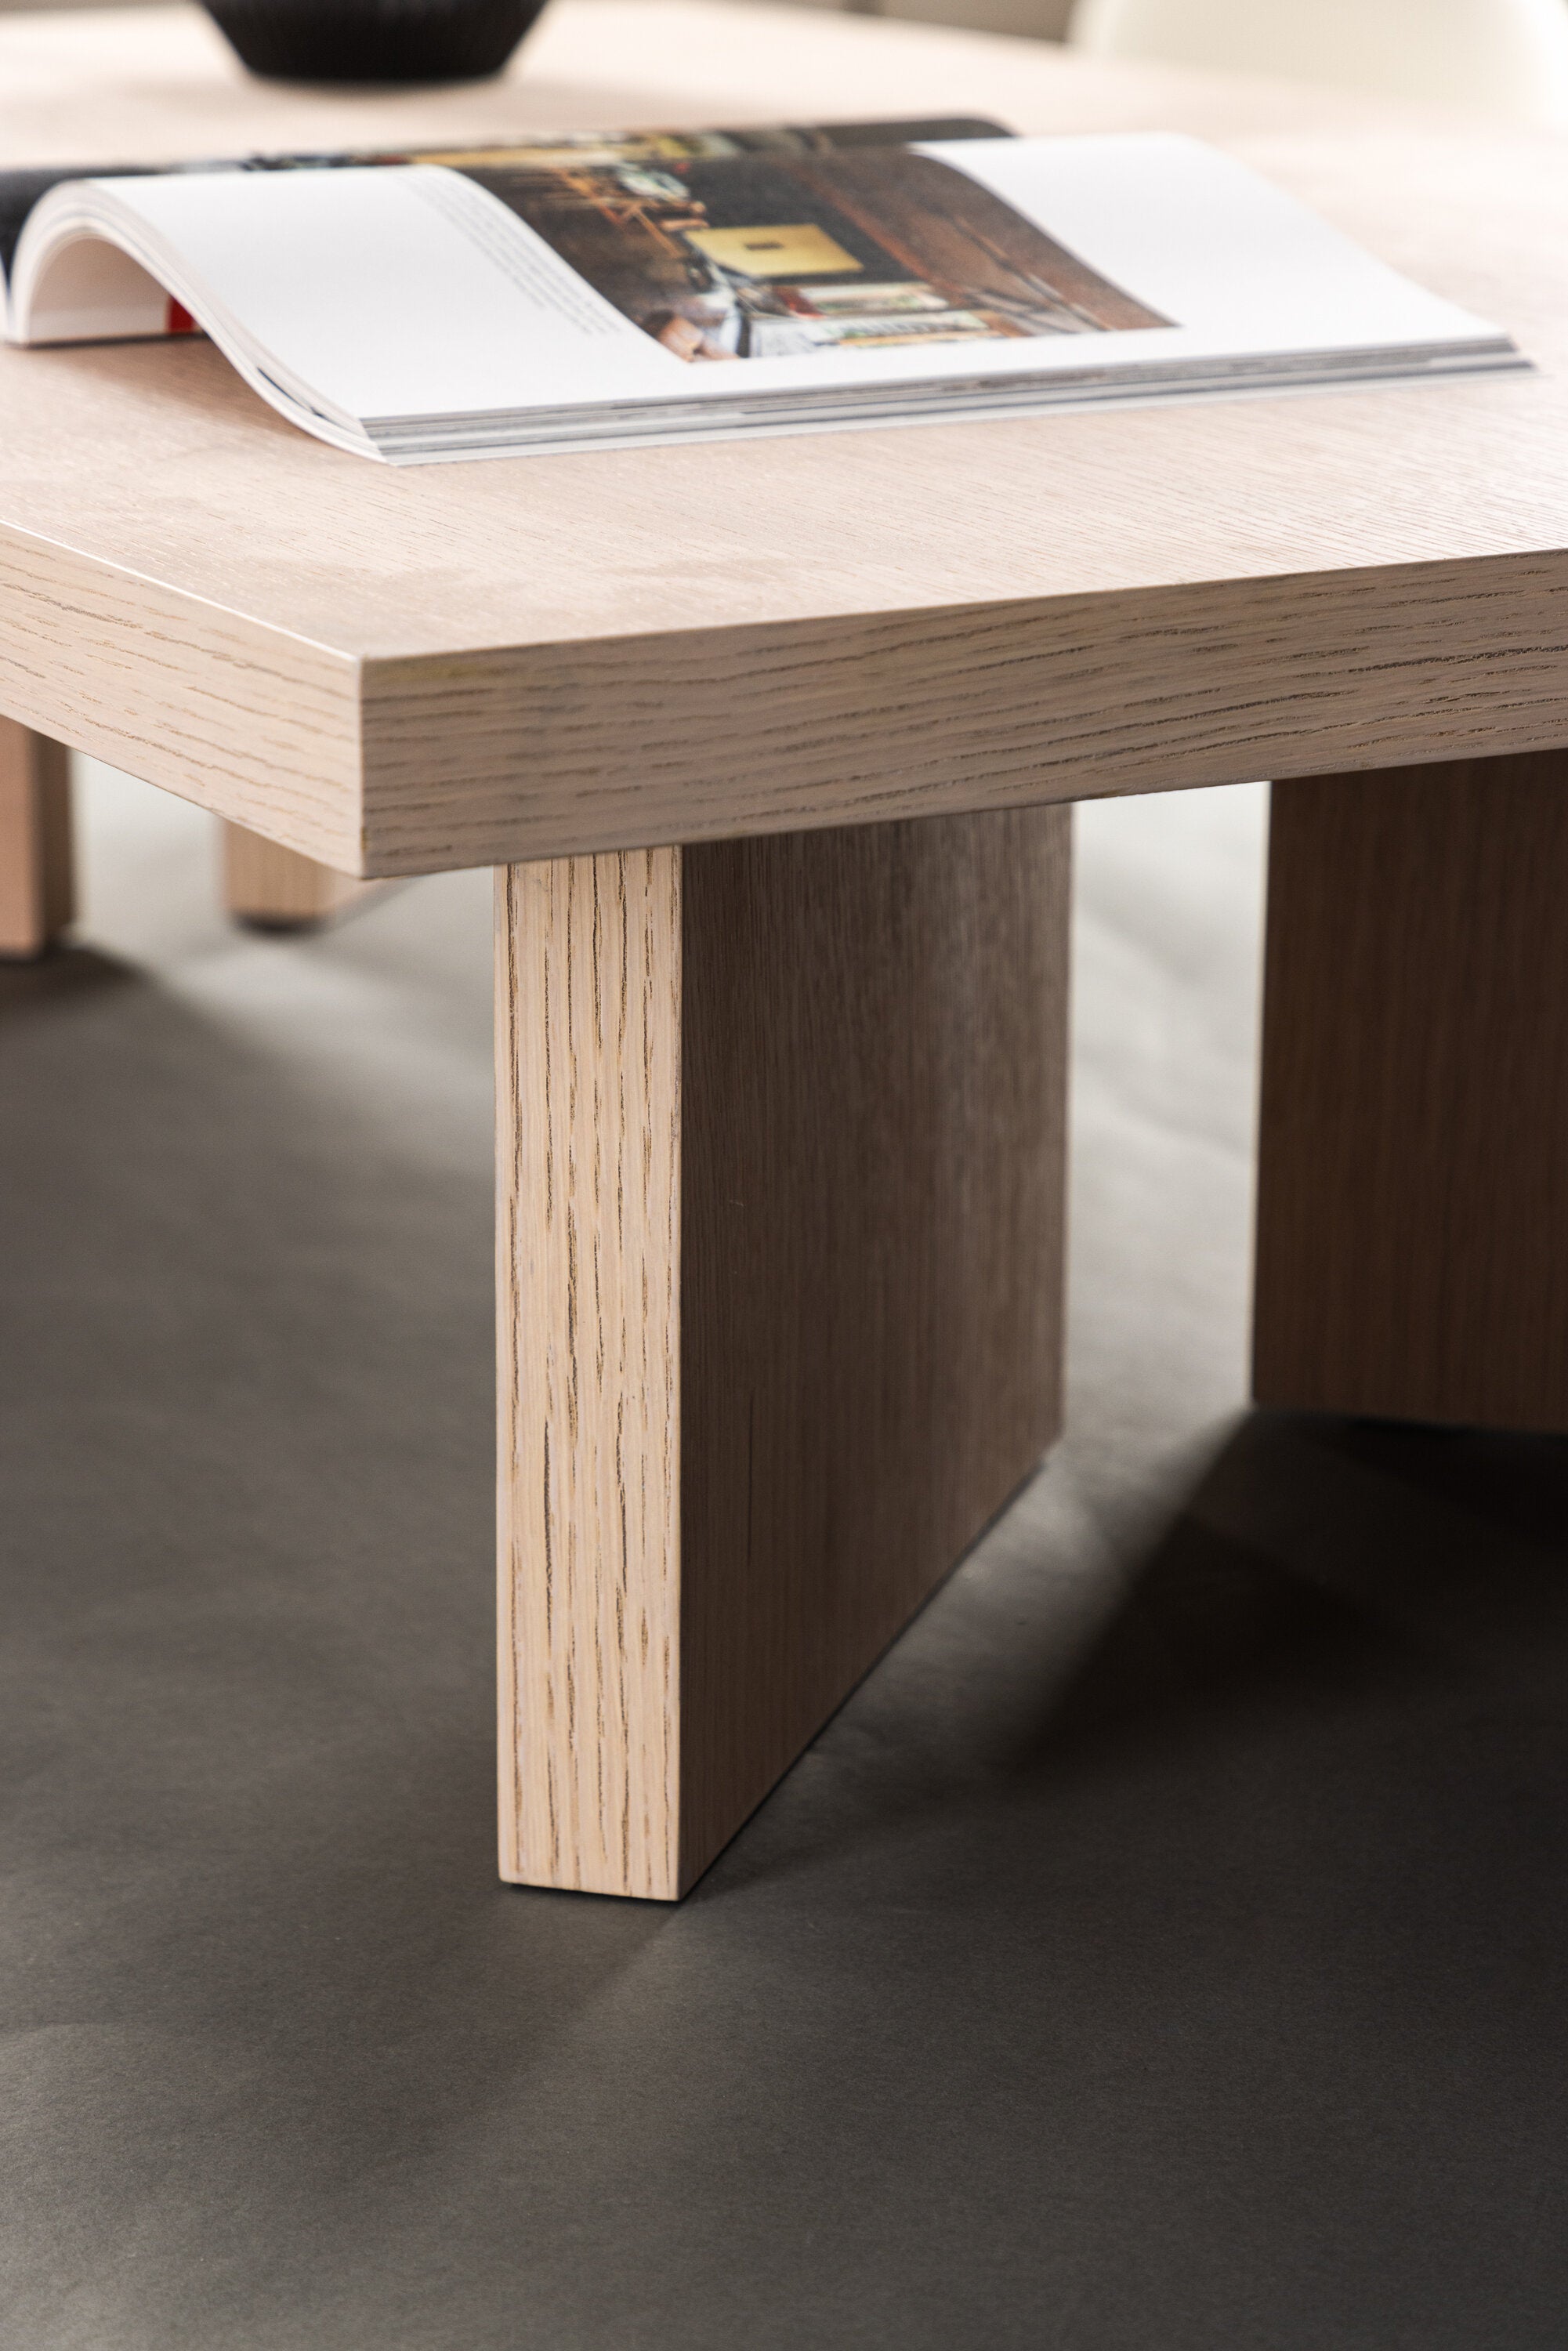 Bassholmen Coffee Tisch in Tünchen präsentiert im Onlineshop von KAQTU Design AG. Beistelltisch ist von Vind